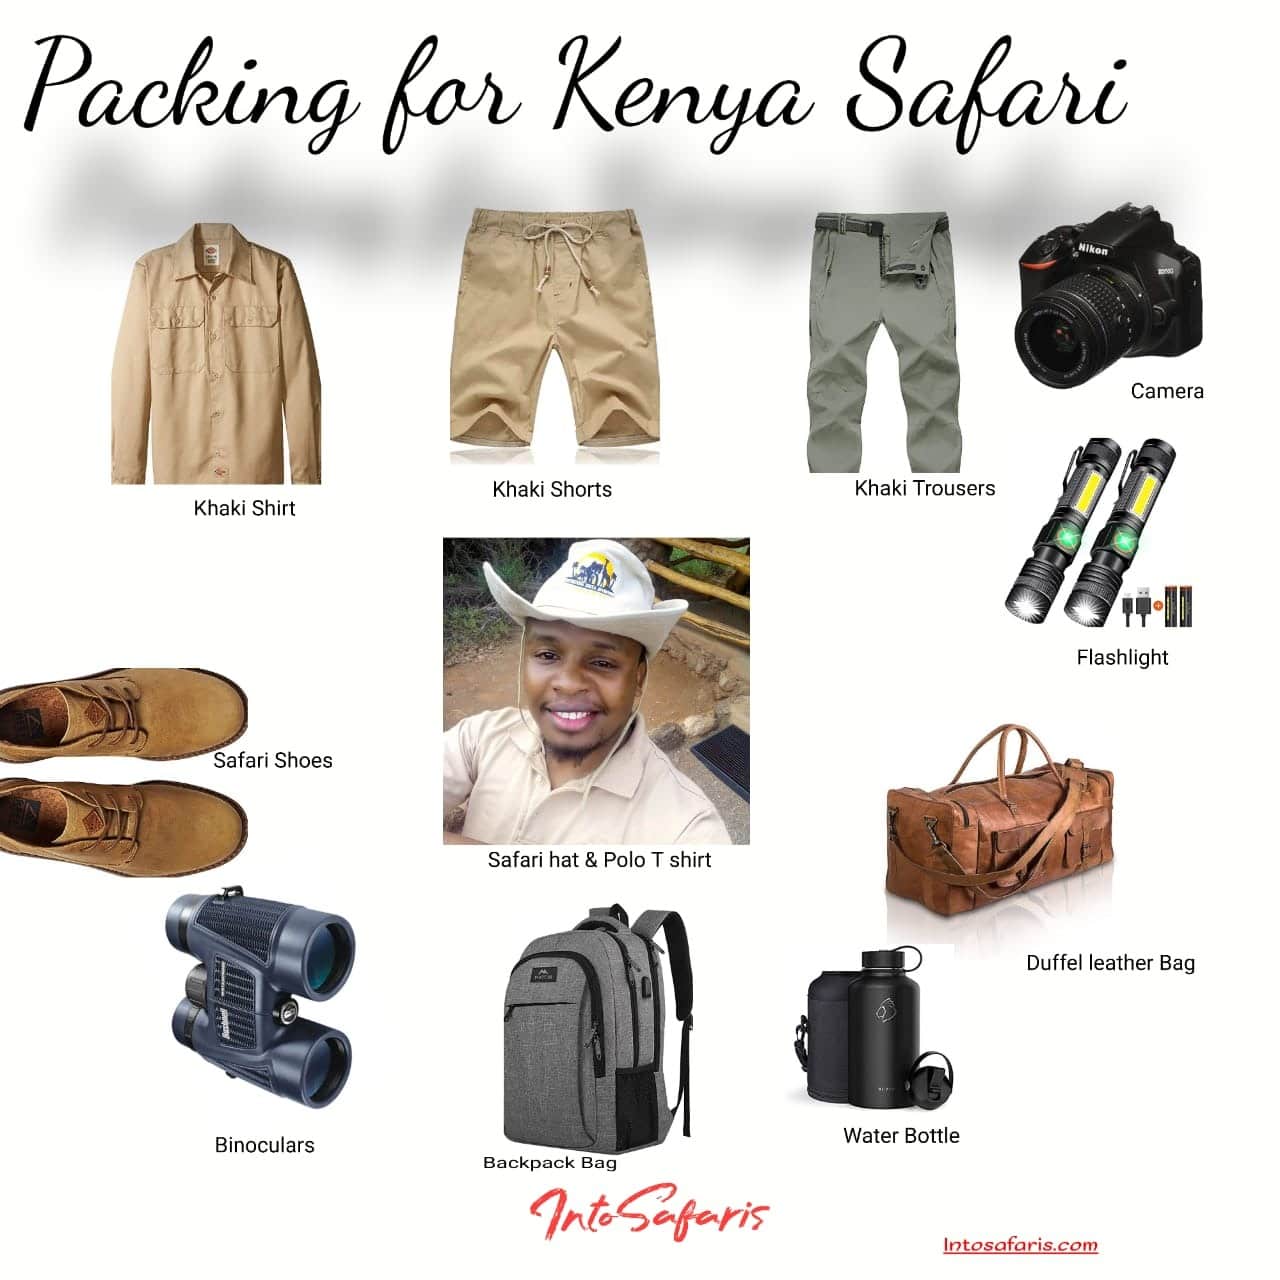 Packing for Kenya Safari. The utmost Guide - Into Safaris